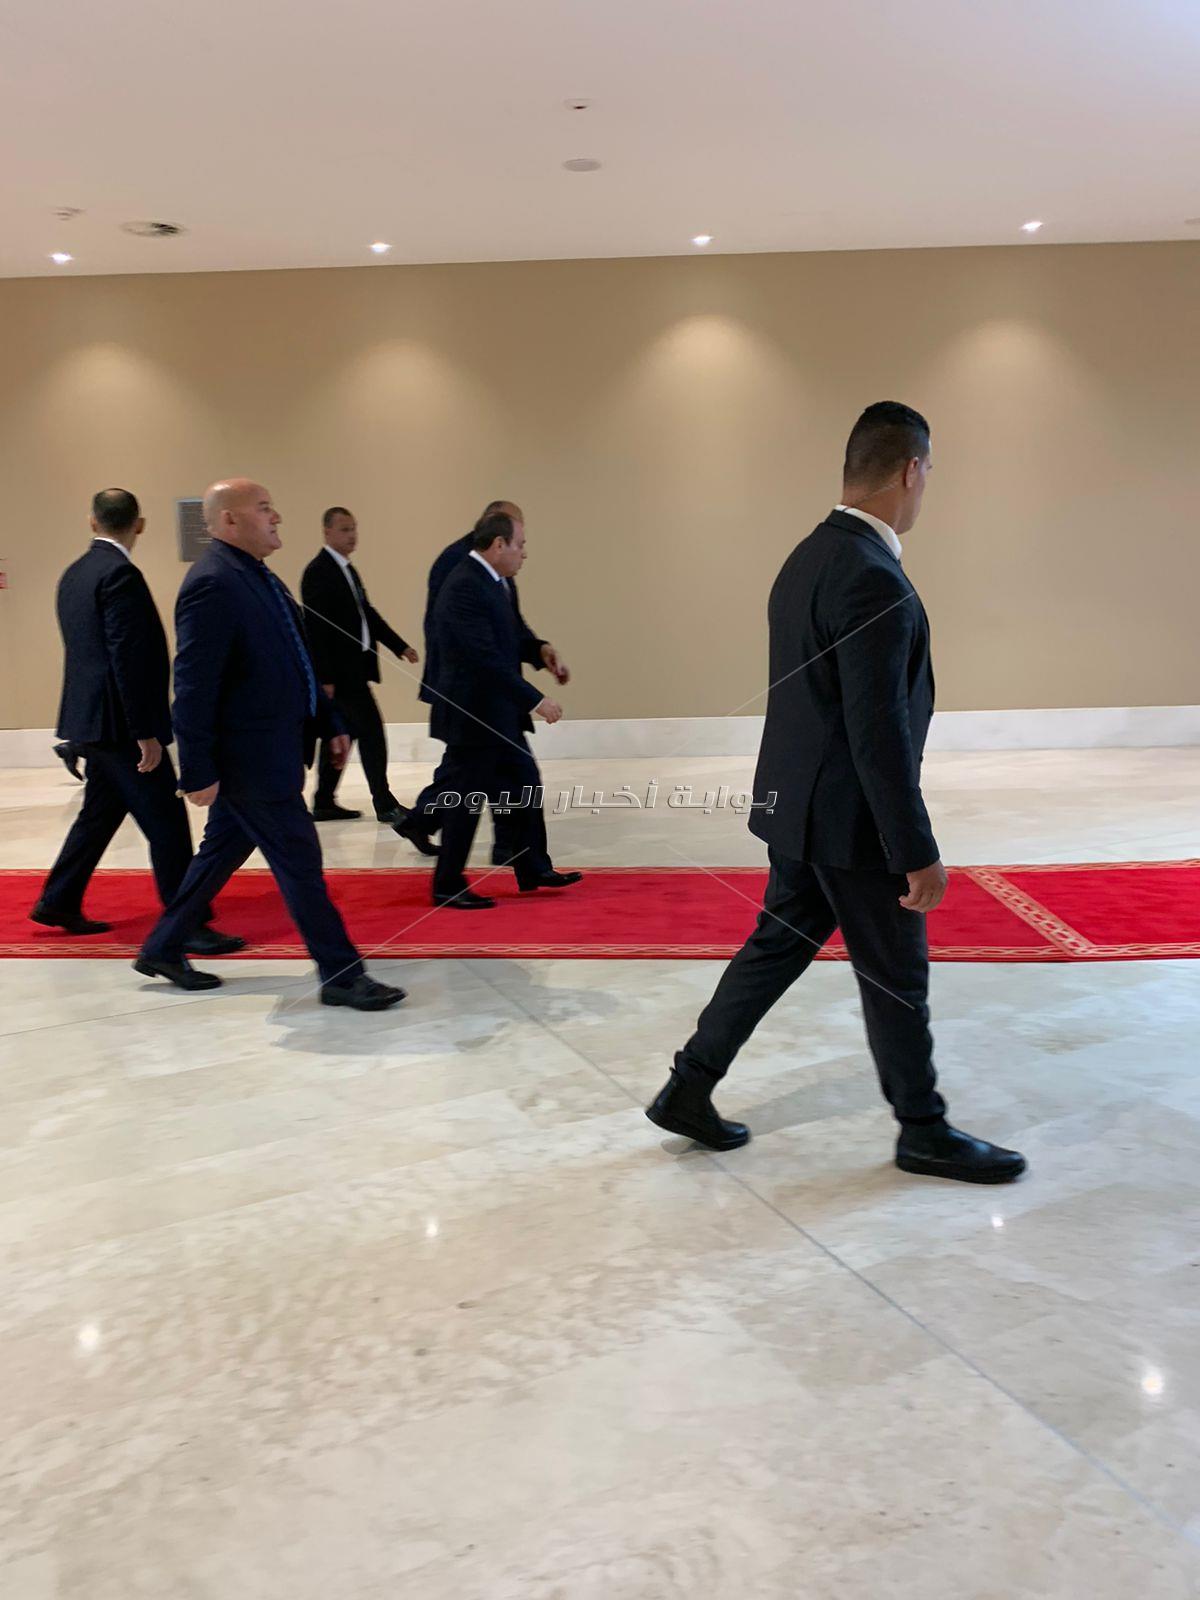 الرئيس السيسي يصل مقر القمة العربية للمشاركة بفاعليات اليوم الثاني